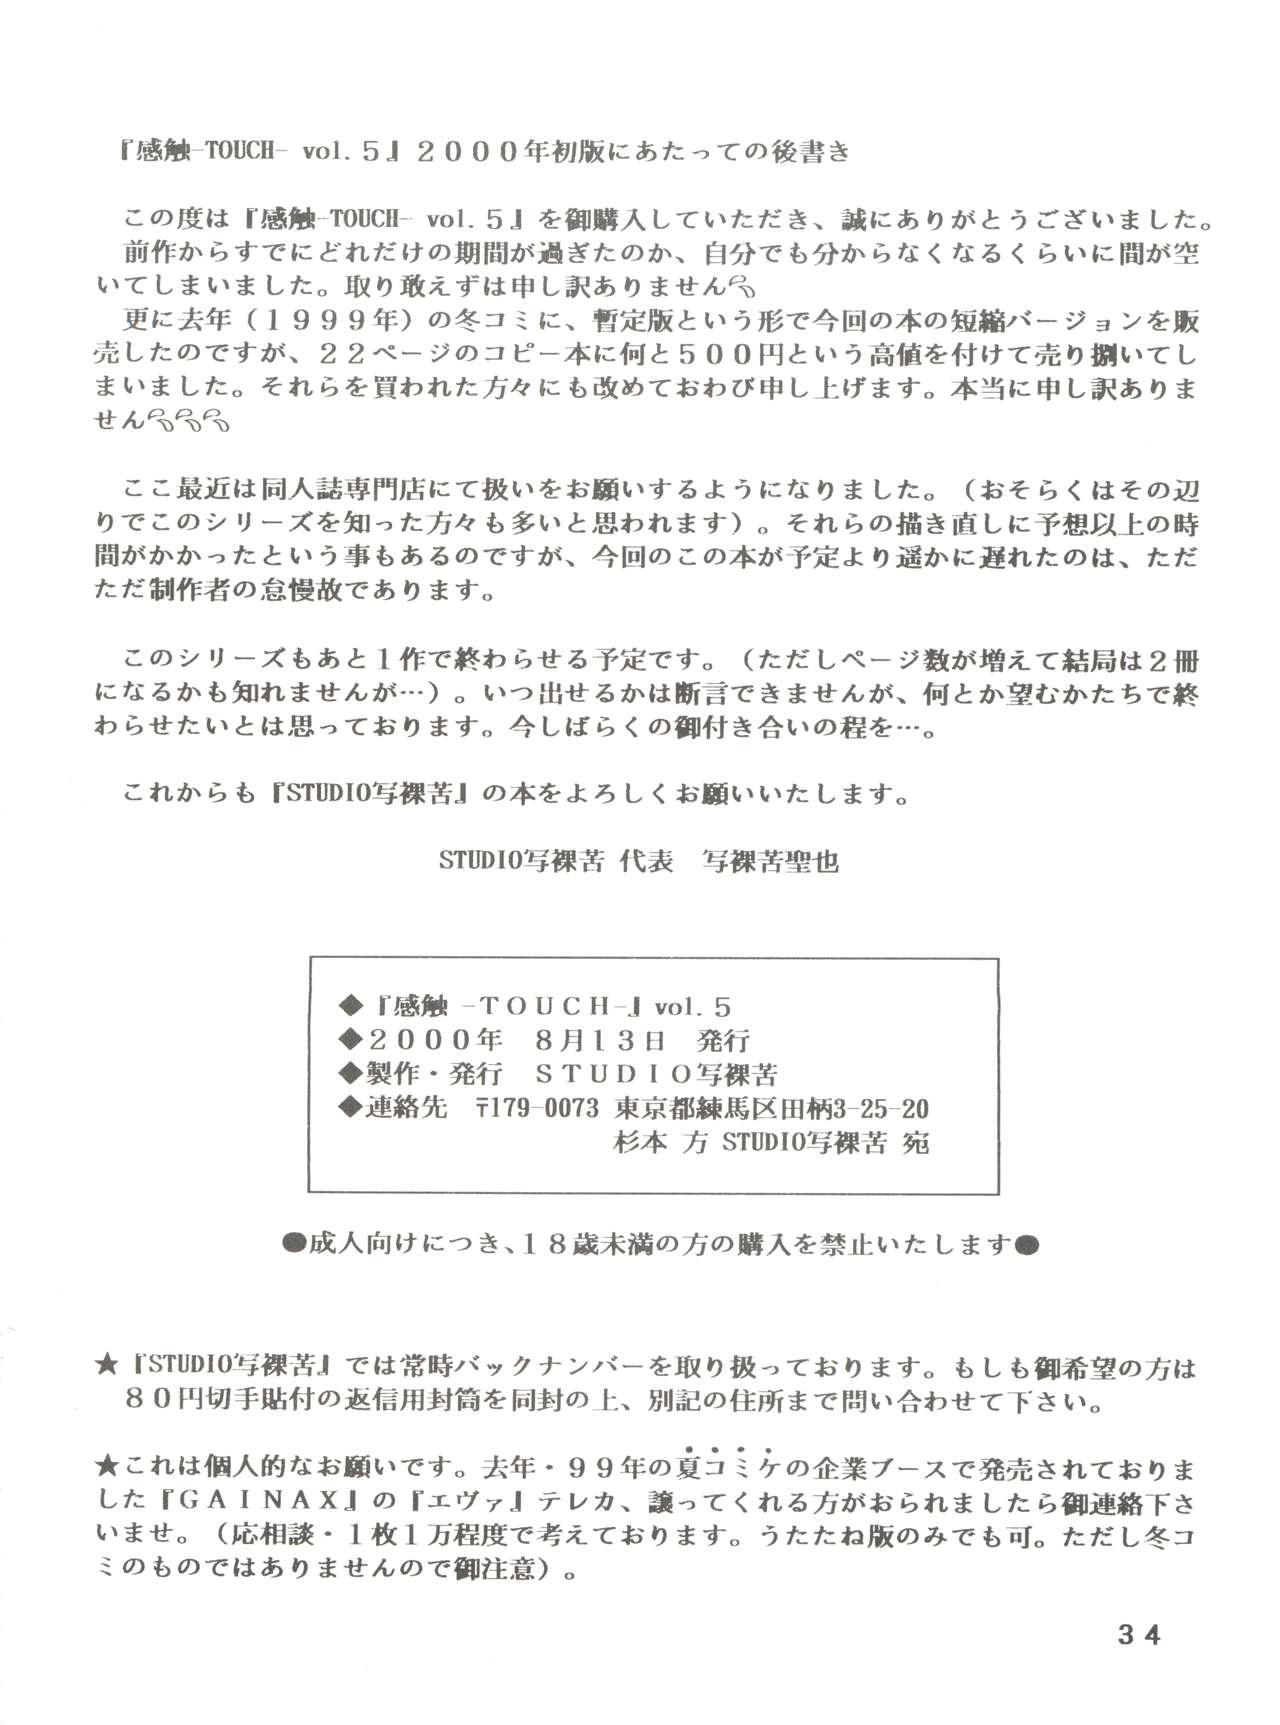 [STUDIO写裸苦 (写裸苦聖也)] 感触 -TOUCH- vol.5 (みゆき) [2000-08-13]